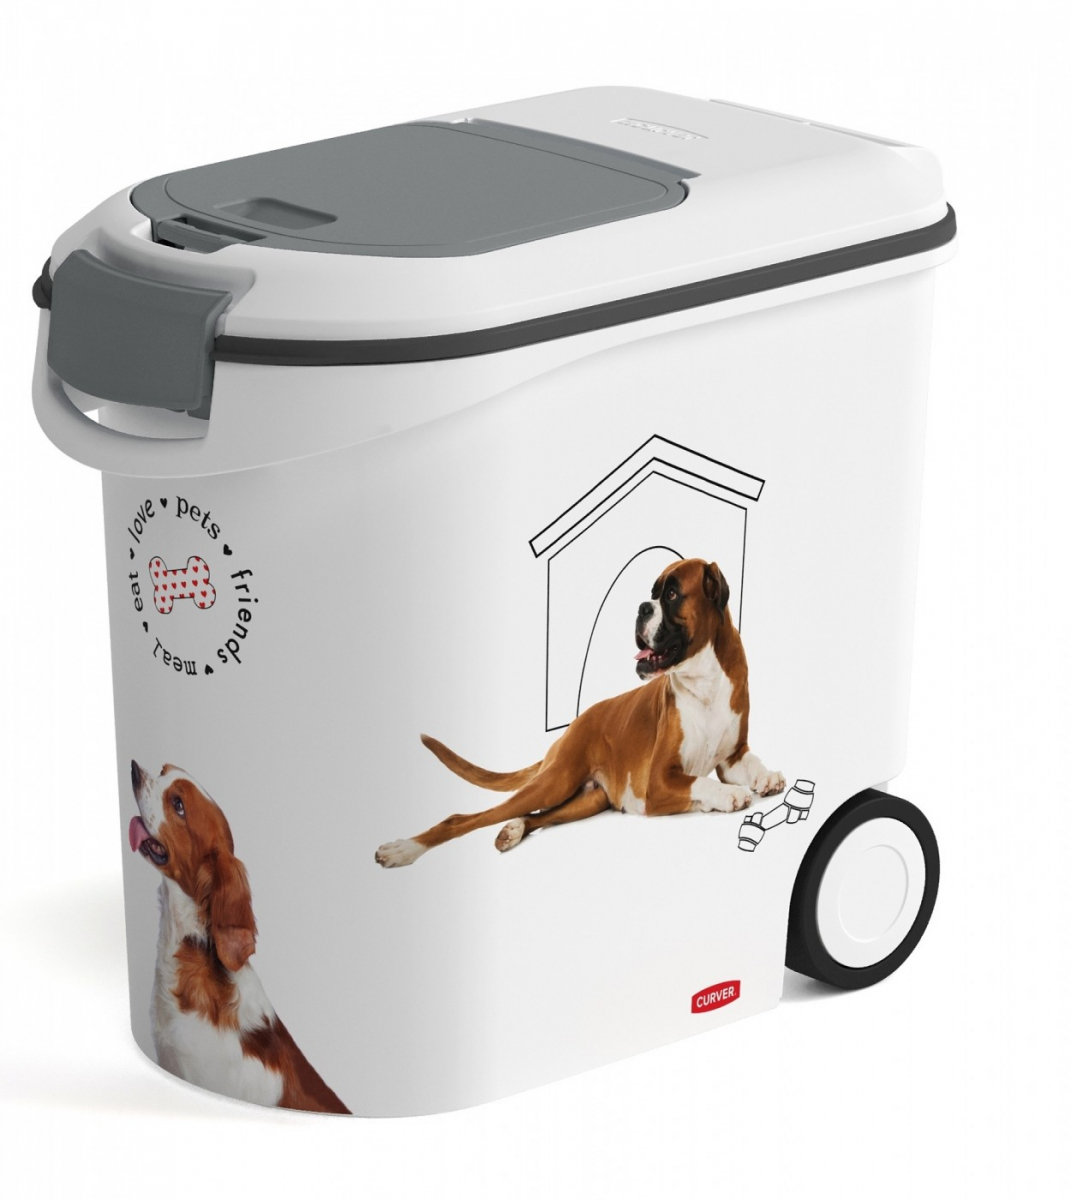 Le nouveau conteneur à croquettes personnalisable pour chien